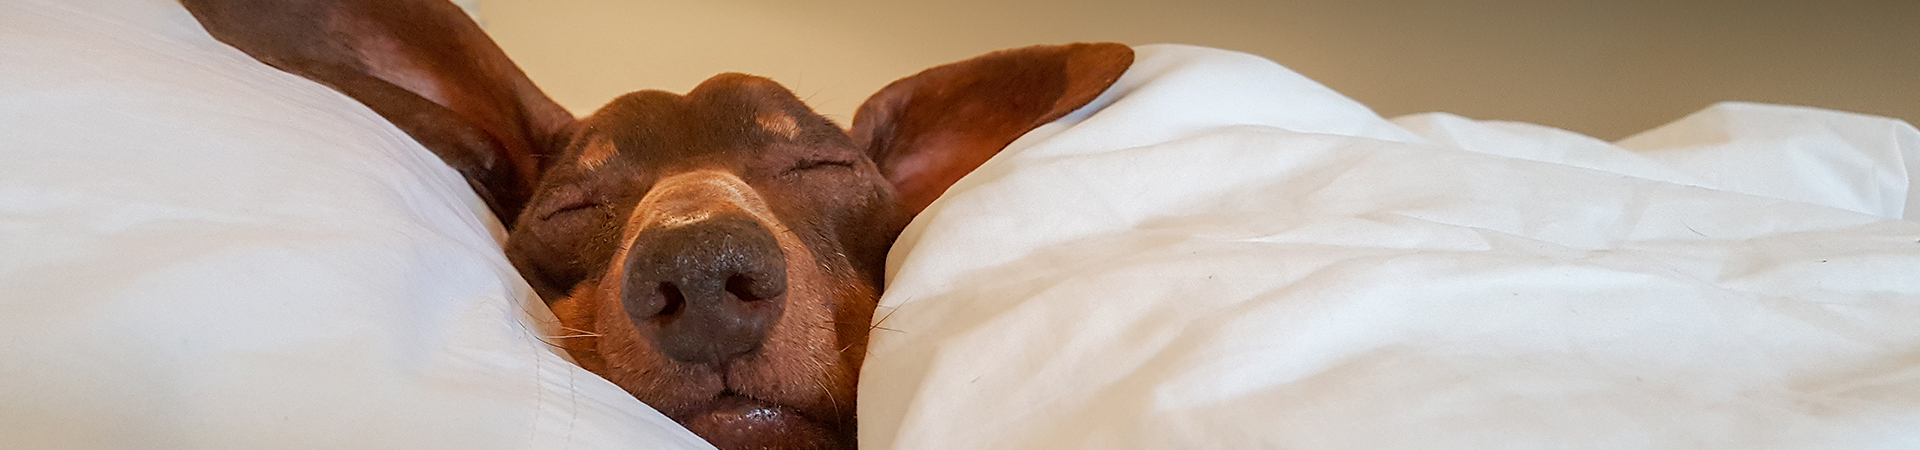 Hund mit langen Ohren liegt gemütlich im Bett und schläft